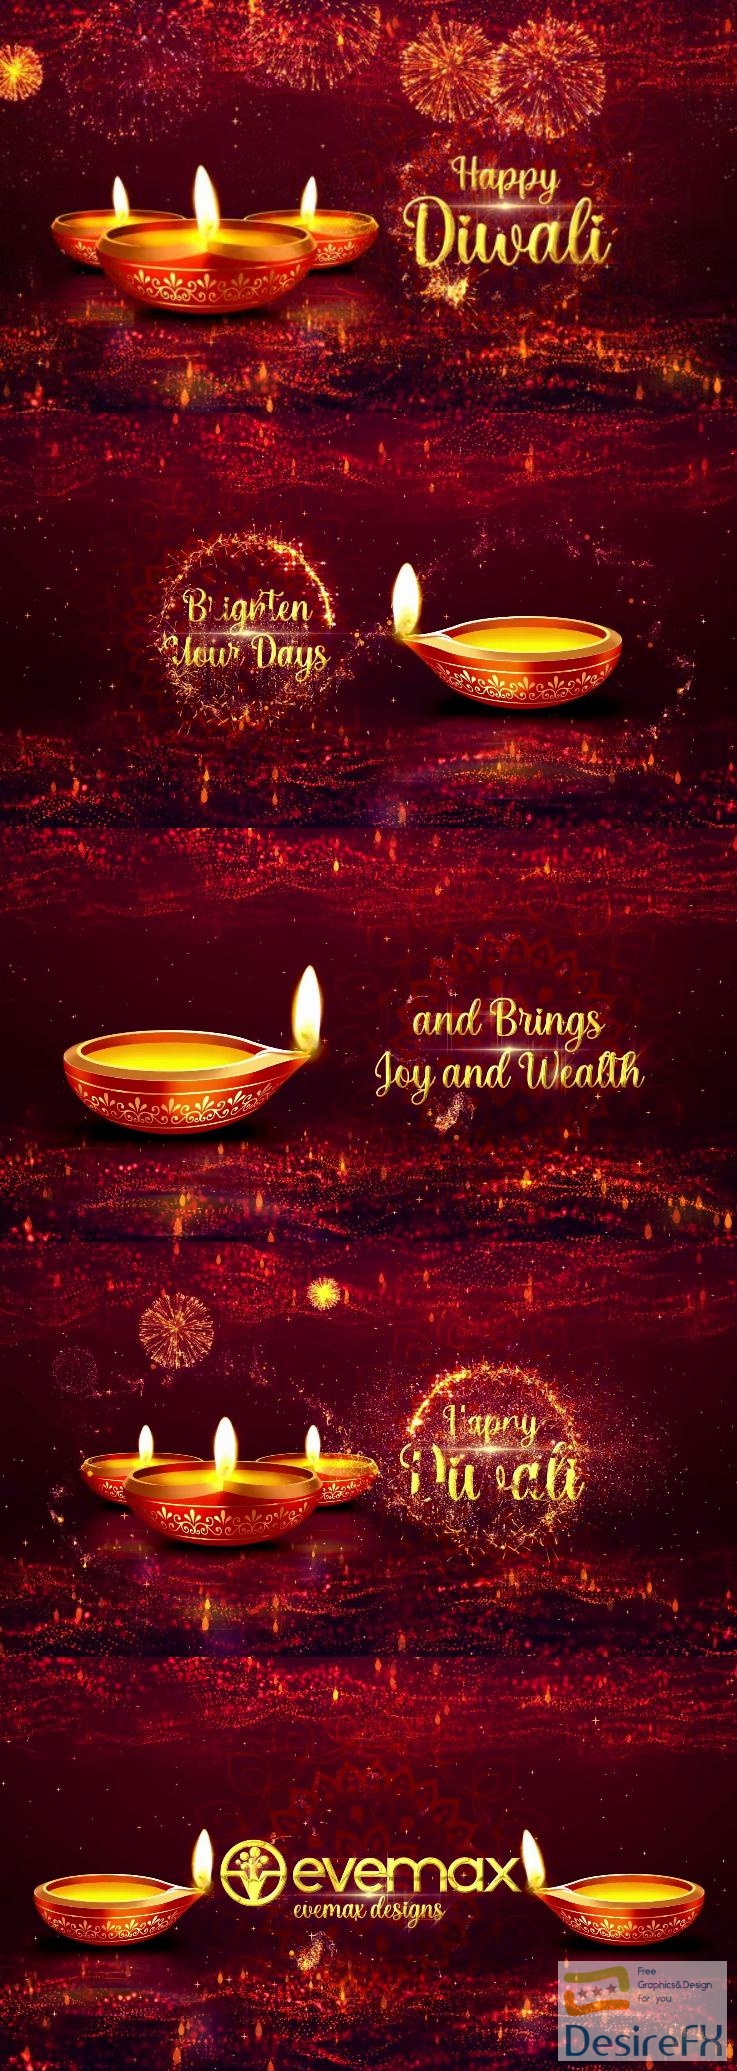 Videohive Diwali Greetings 49001973